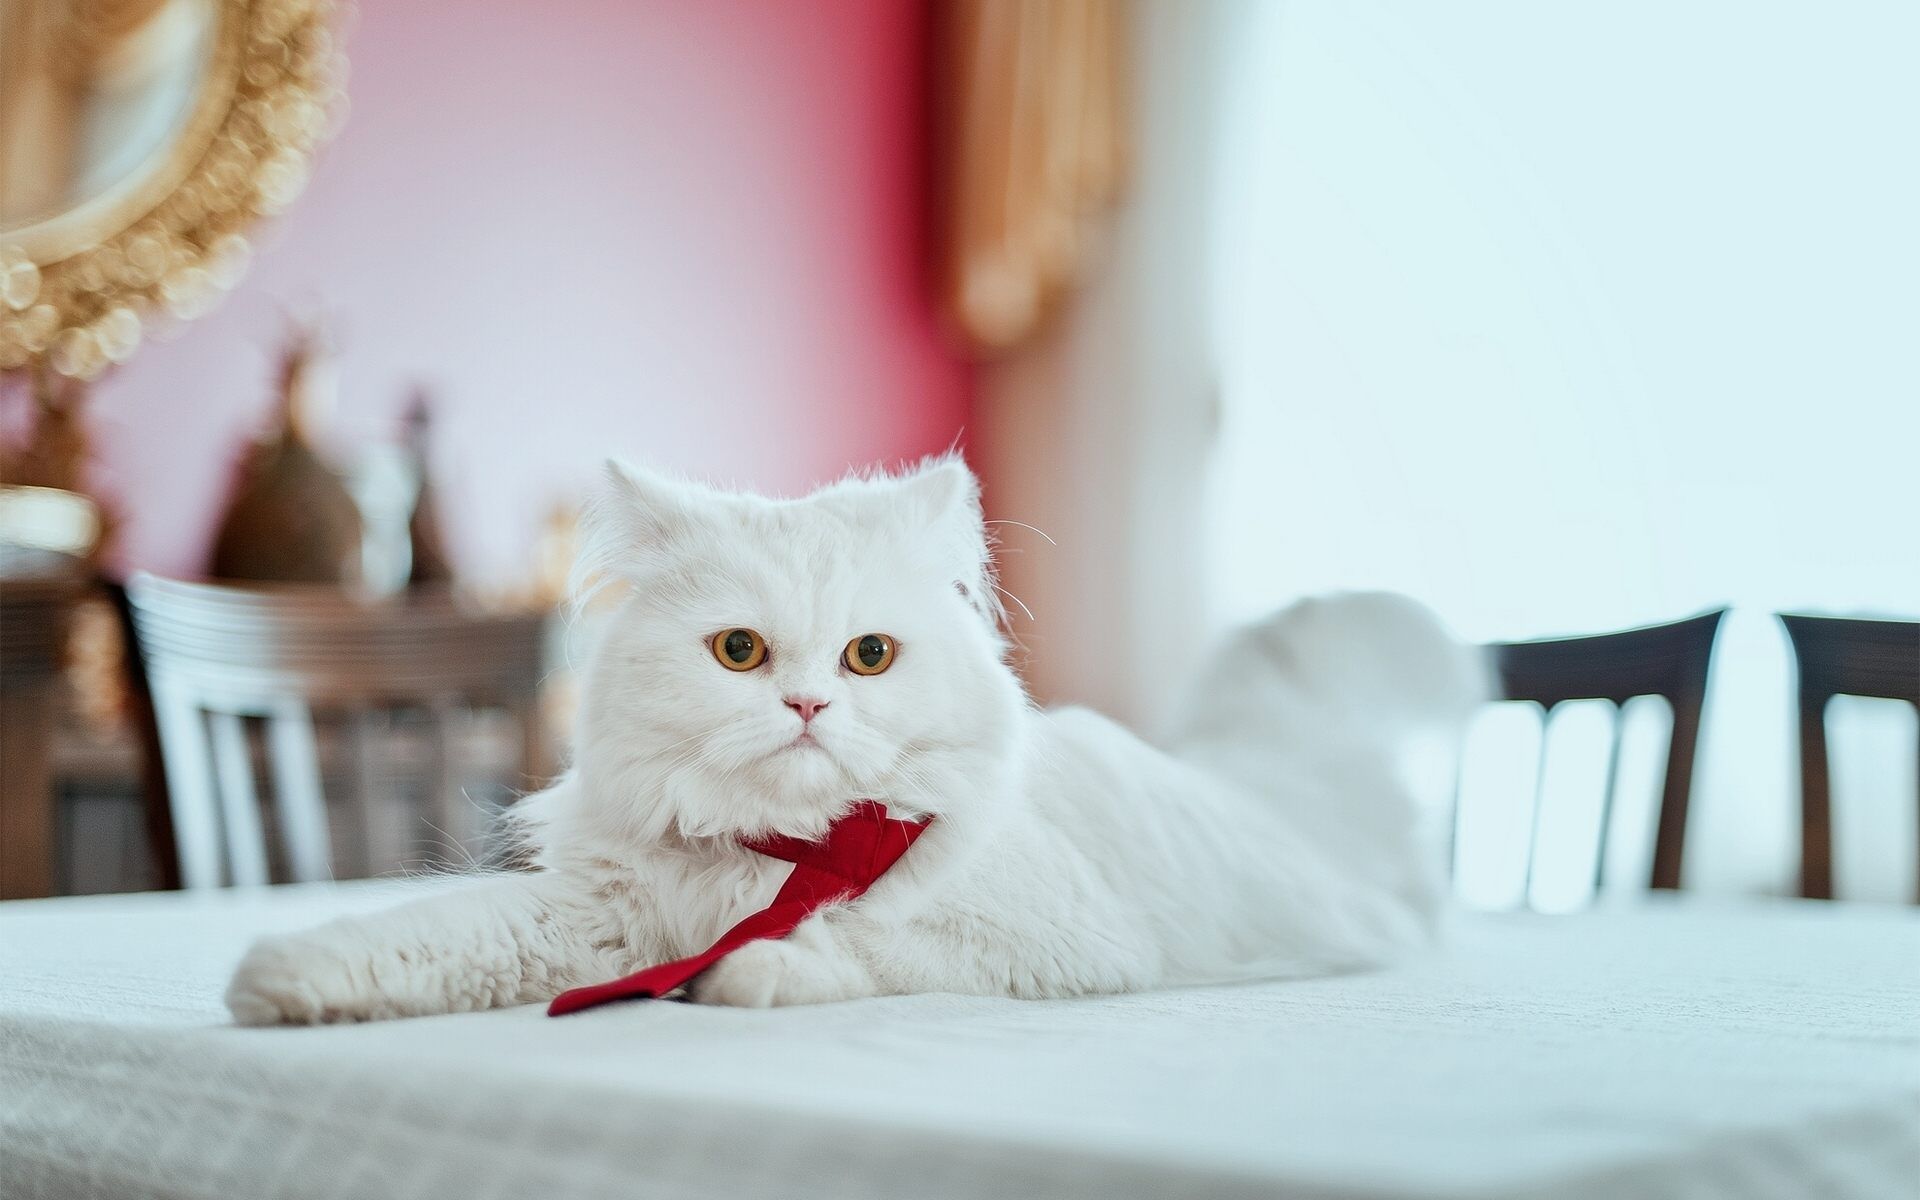 تصویر لاکچری گربه سفید ایرانی برای Instagram